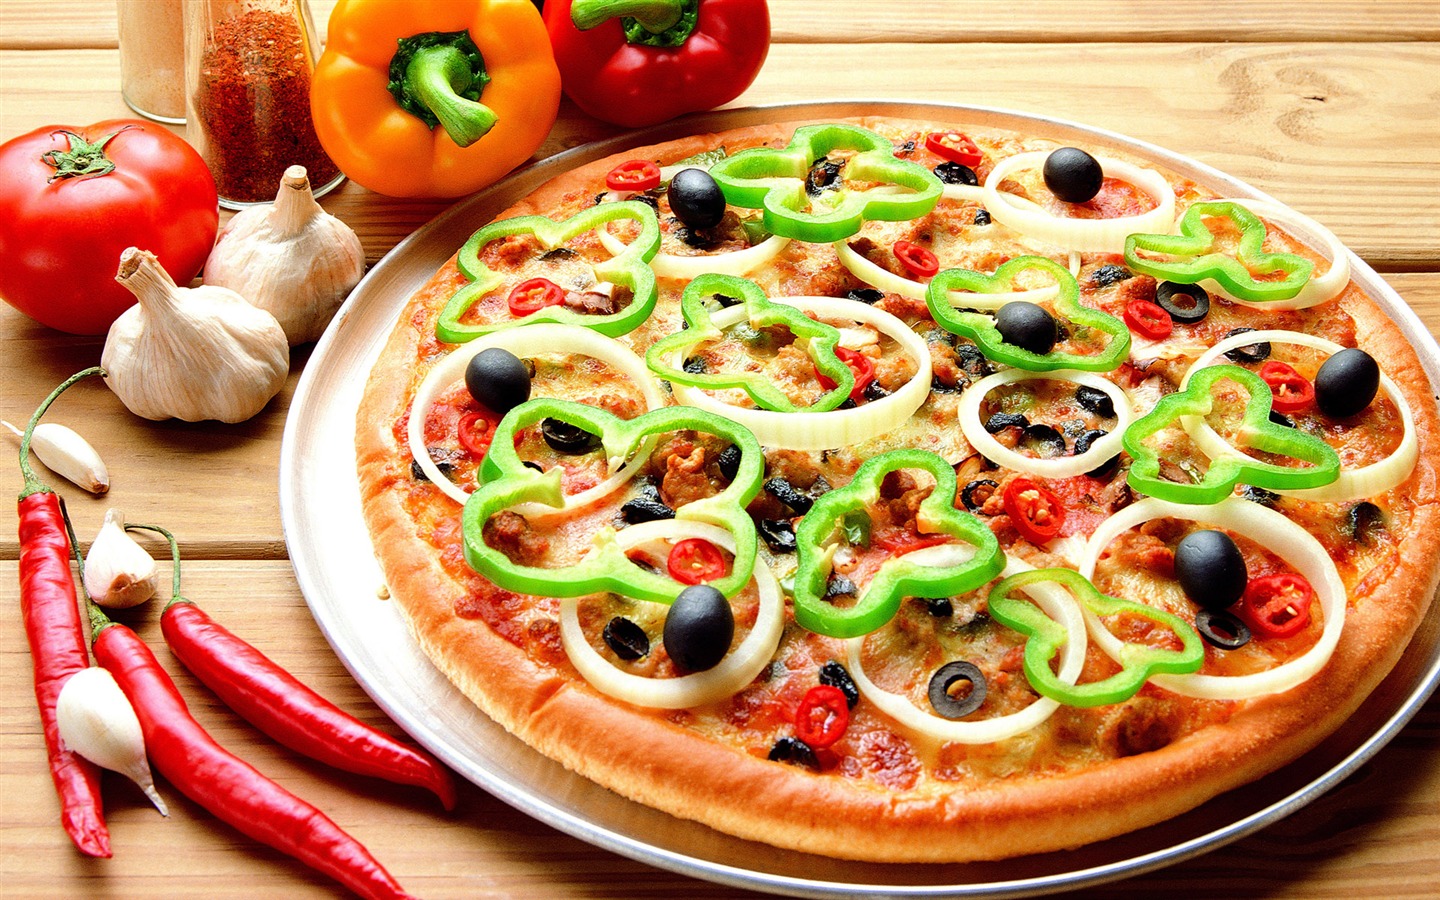 Fondos de pizzerías de Alimentos (3) #1 - 1440x900